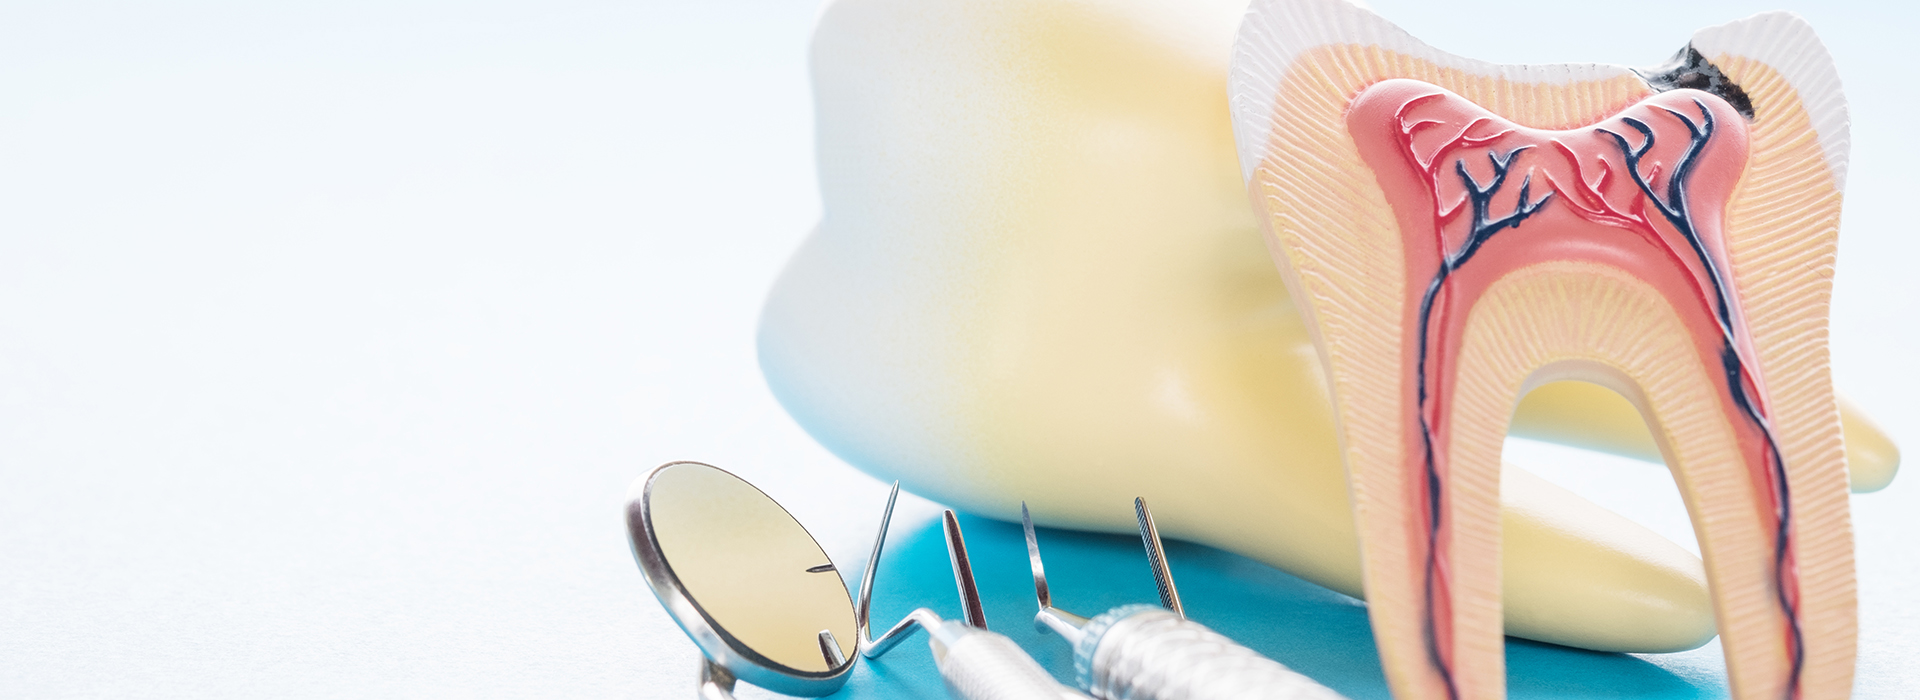 Springfield Gentle Dental | Veneers, Emergency Treatment and Implant Dentistry